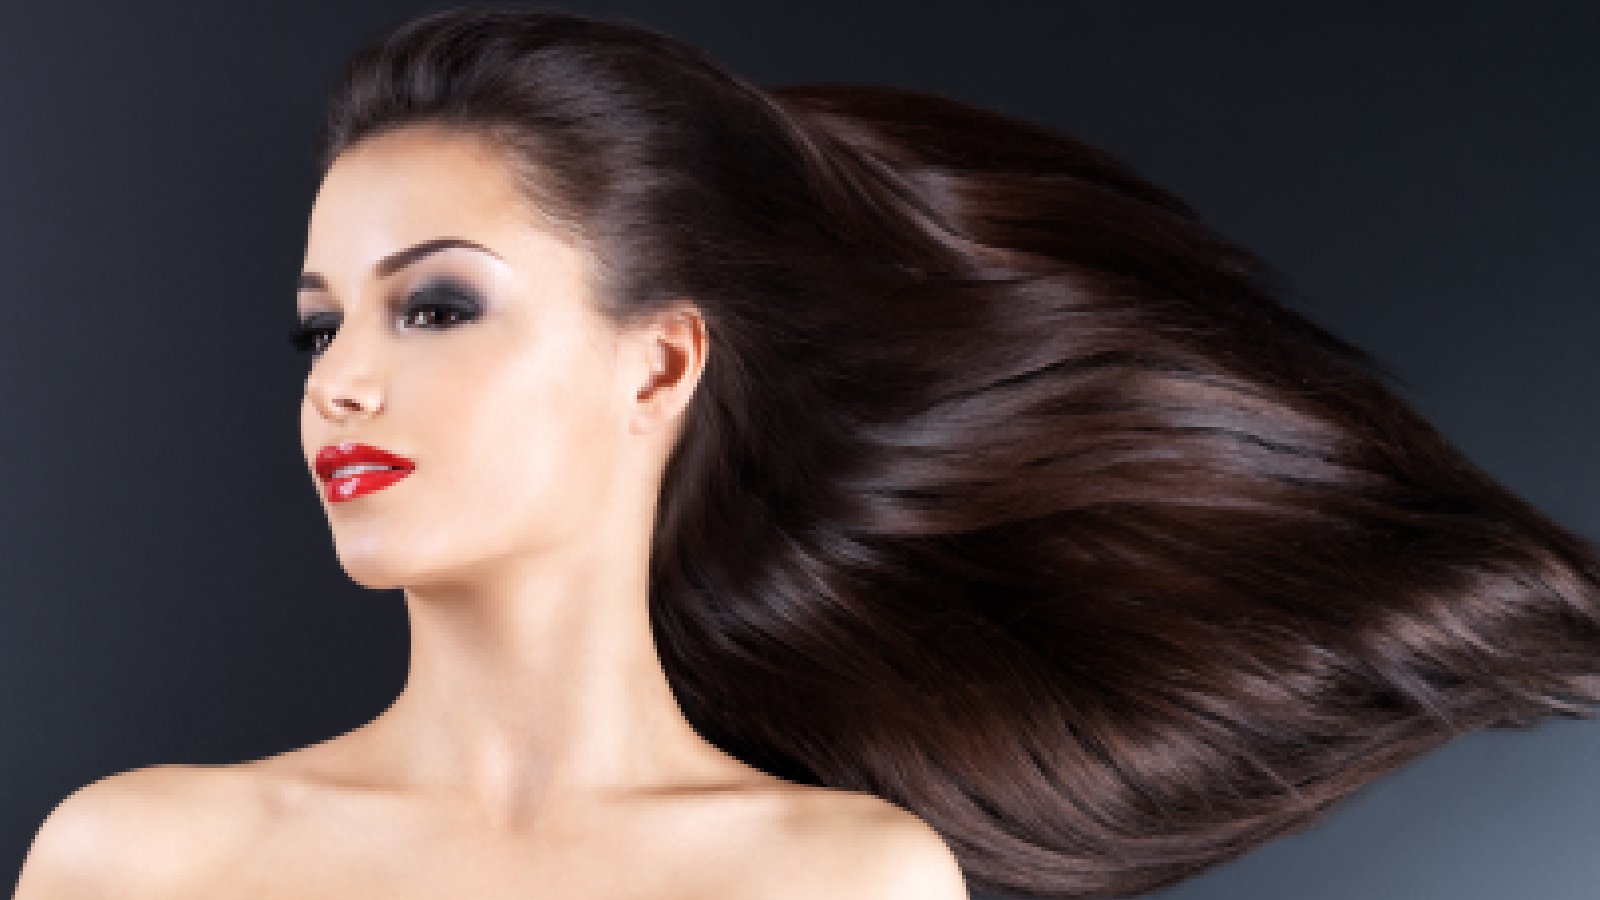 बालों को बढ़ने में मदद करते हैं 5 तरह के पोषक तत्व, समर डाइट में जरूर करें शामिल